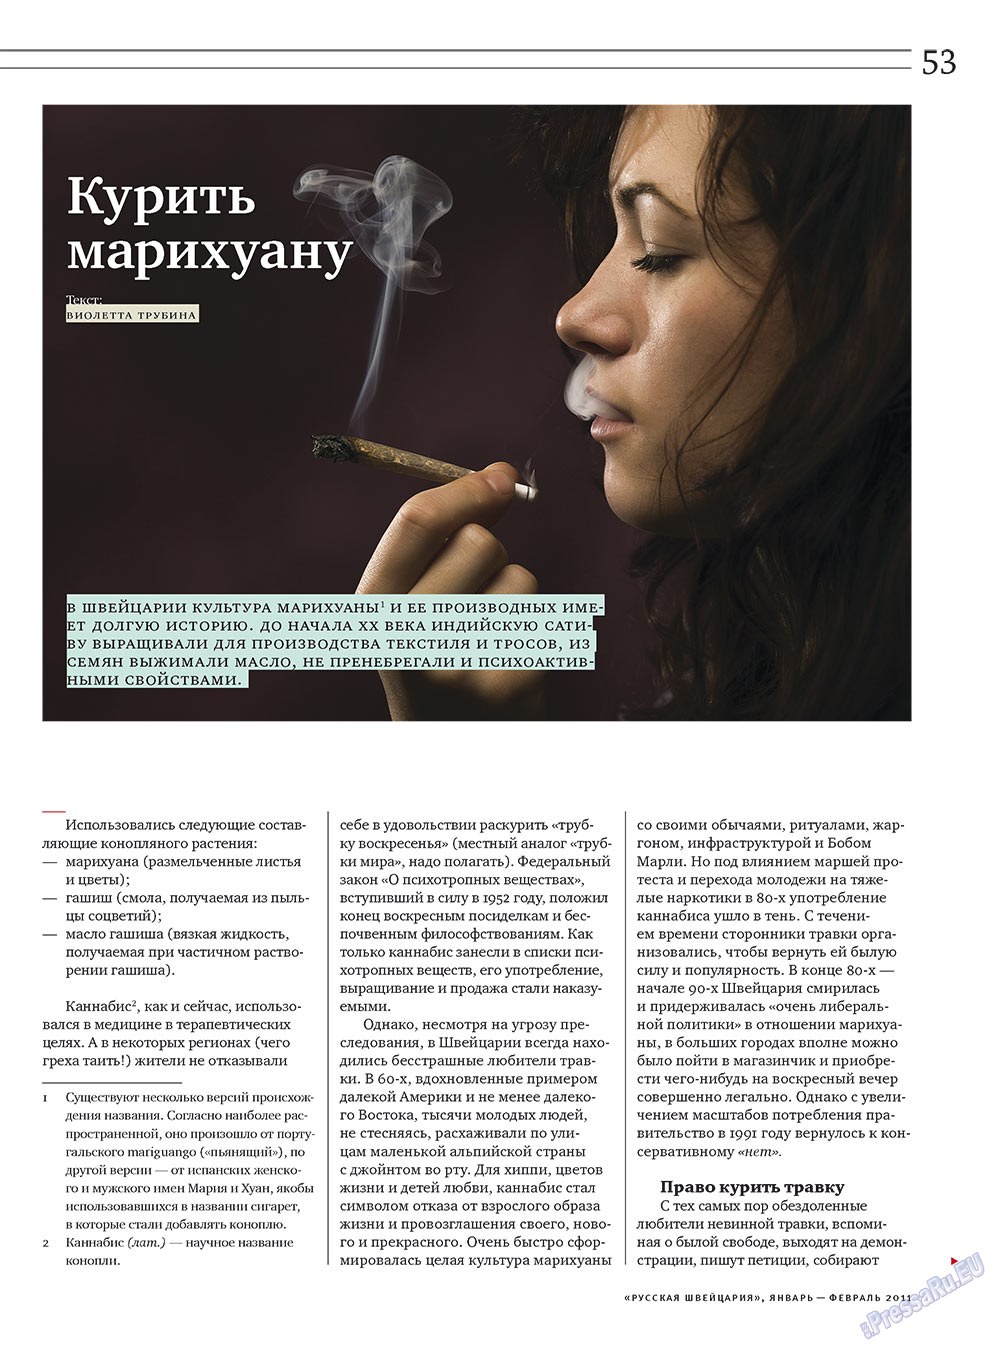 Русская Швейцария, журнал. 2011 №1 стр.53